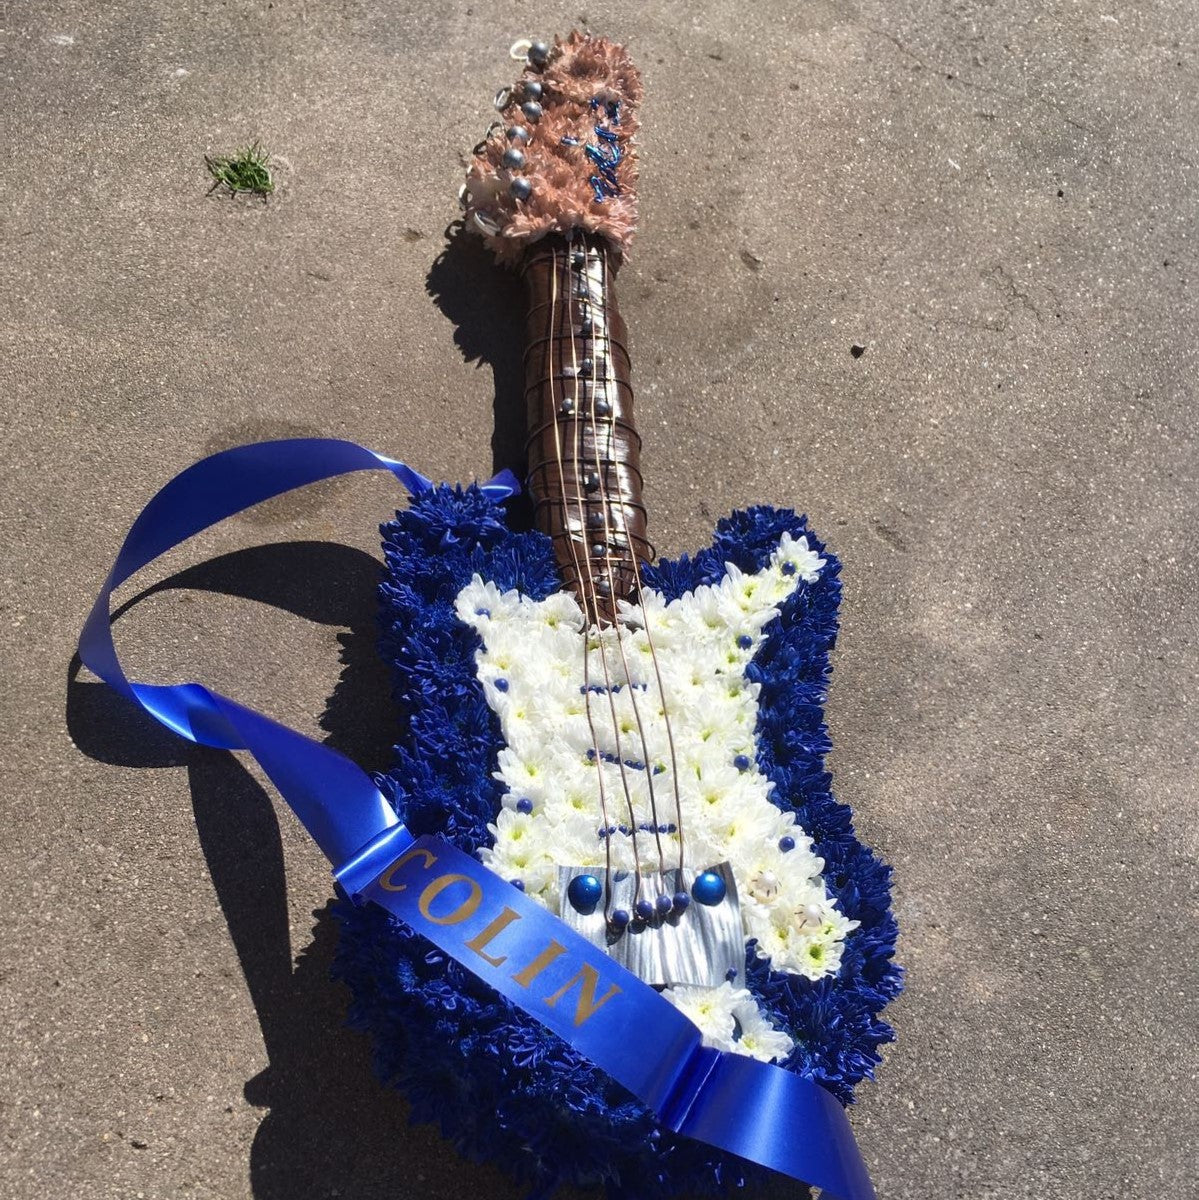 Fender Guitar Tribute Funeral Tribute